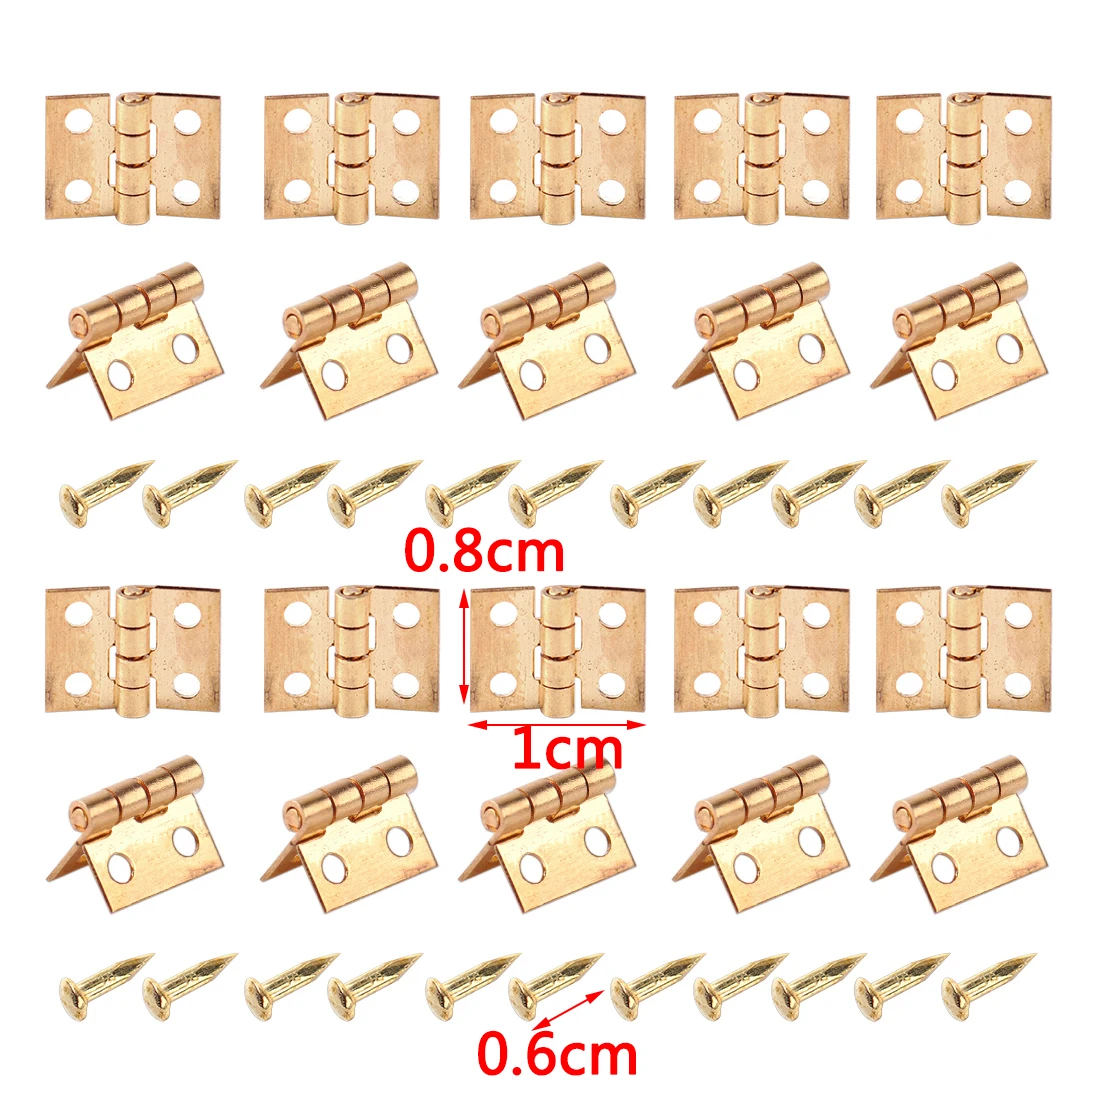 20шт мебельные золотистые миниатюрные петли с гвозди-шурупы, пригодные для кукольного домика 1/12 шкала шкаф 10 мм x 8 мм